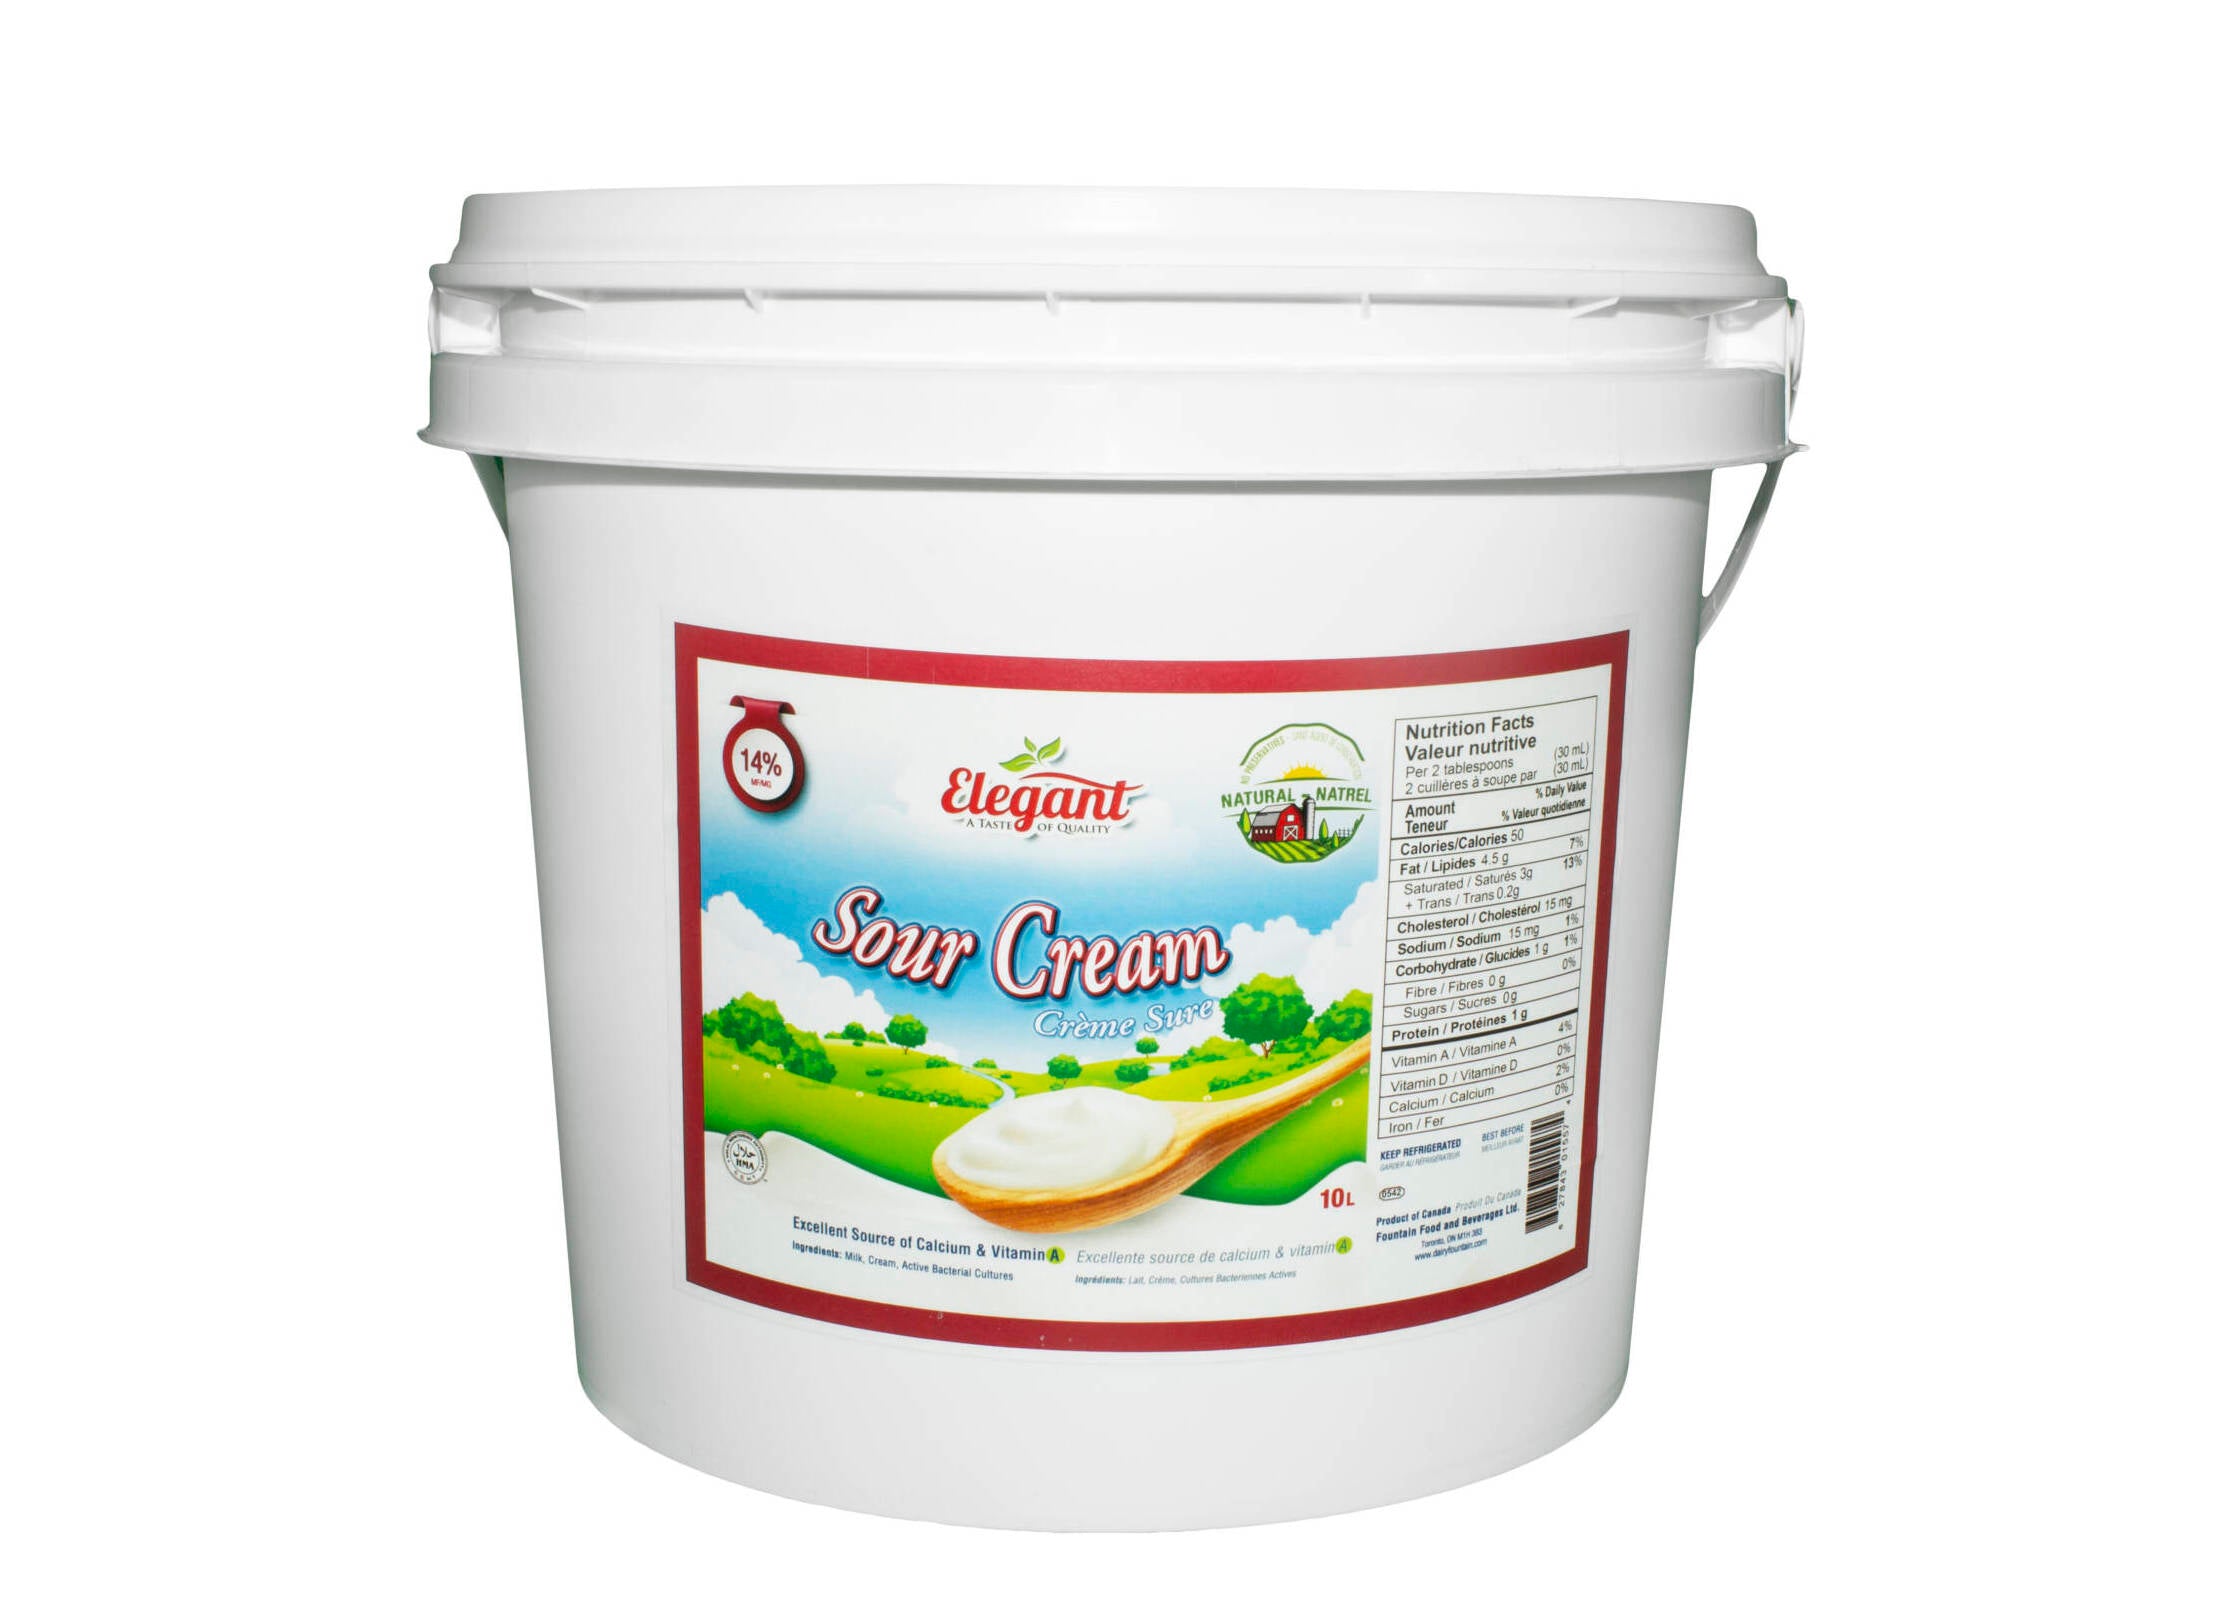 Elegant - Sour Cream